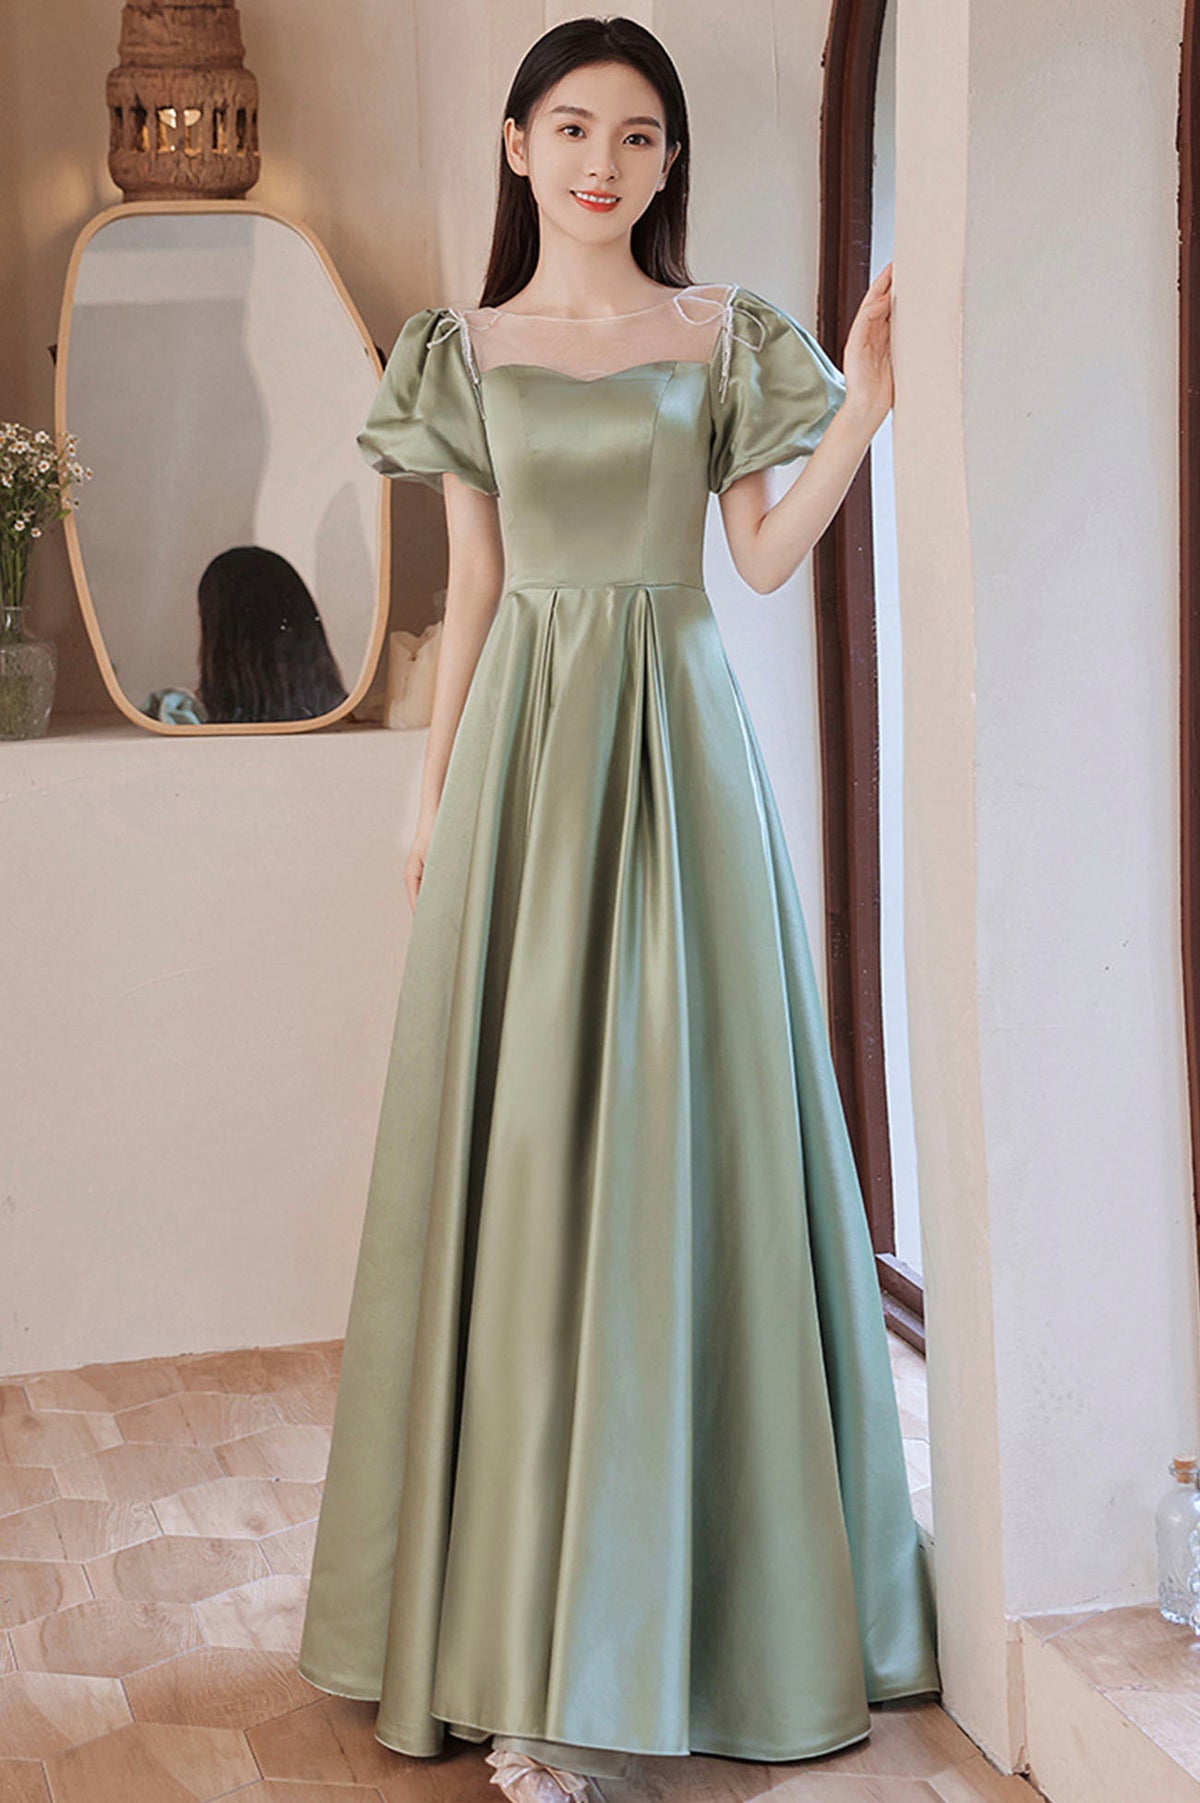 Green Satin Long A-Line Prom Dress, Cute Short Sleeve Evening Dress